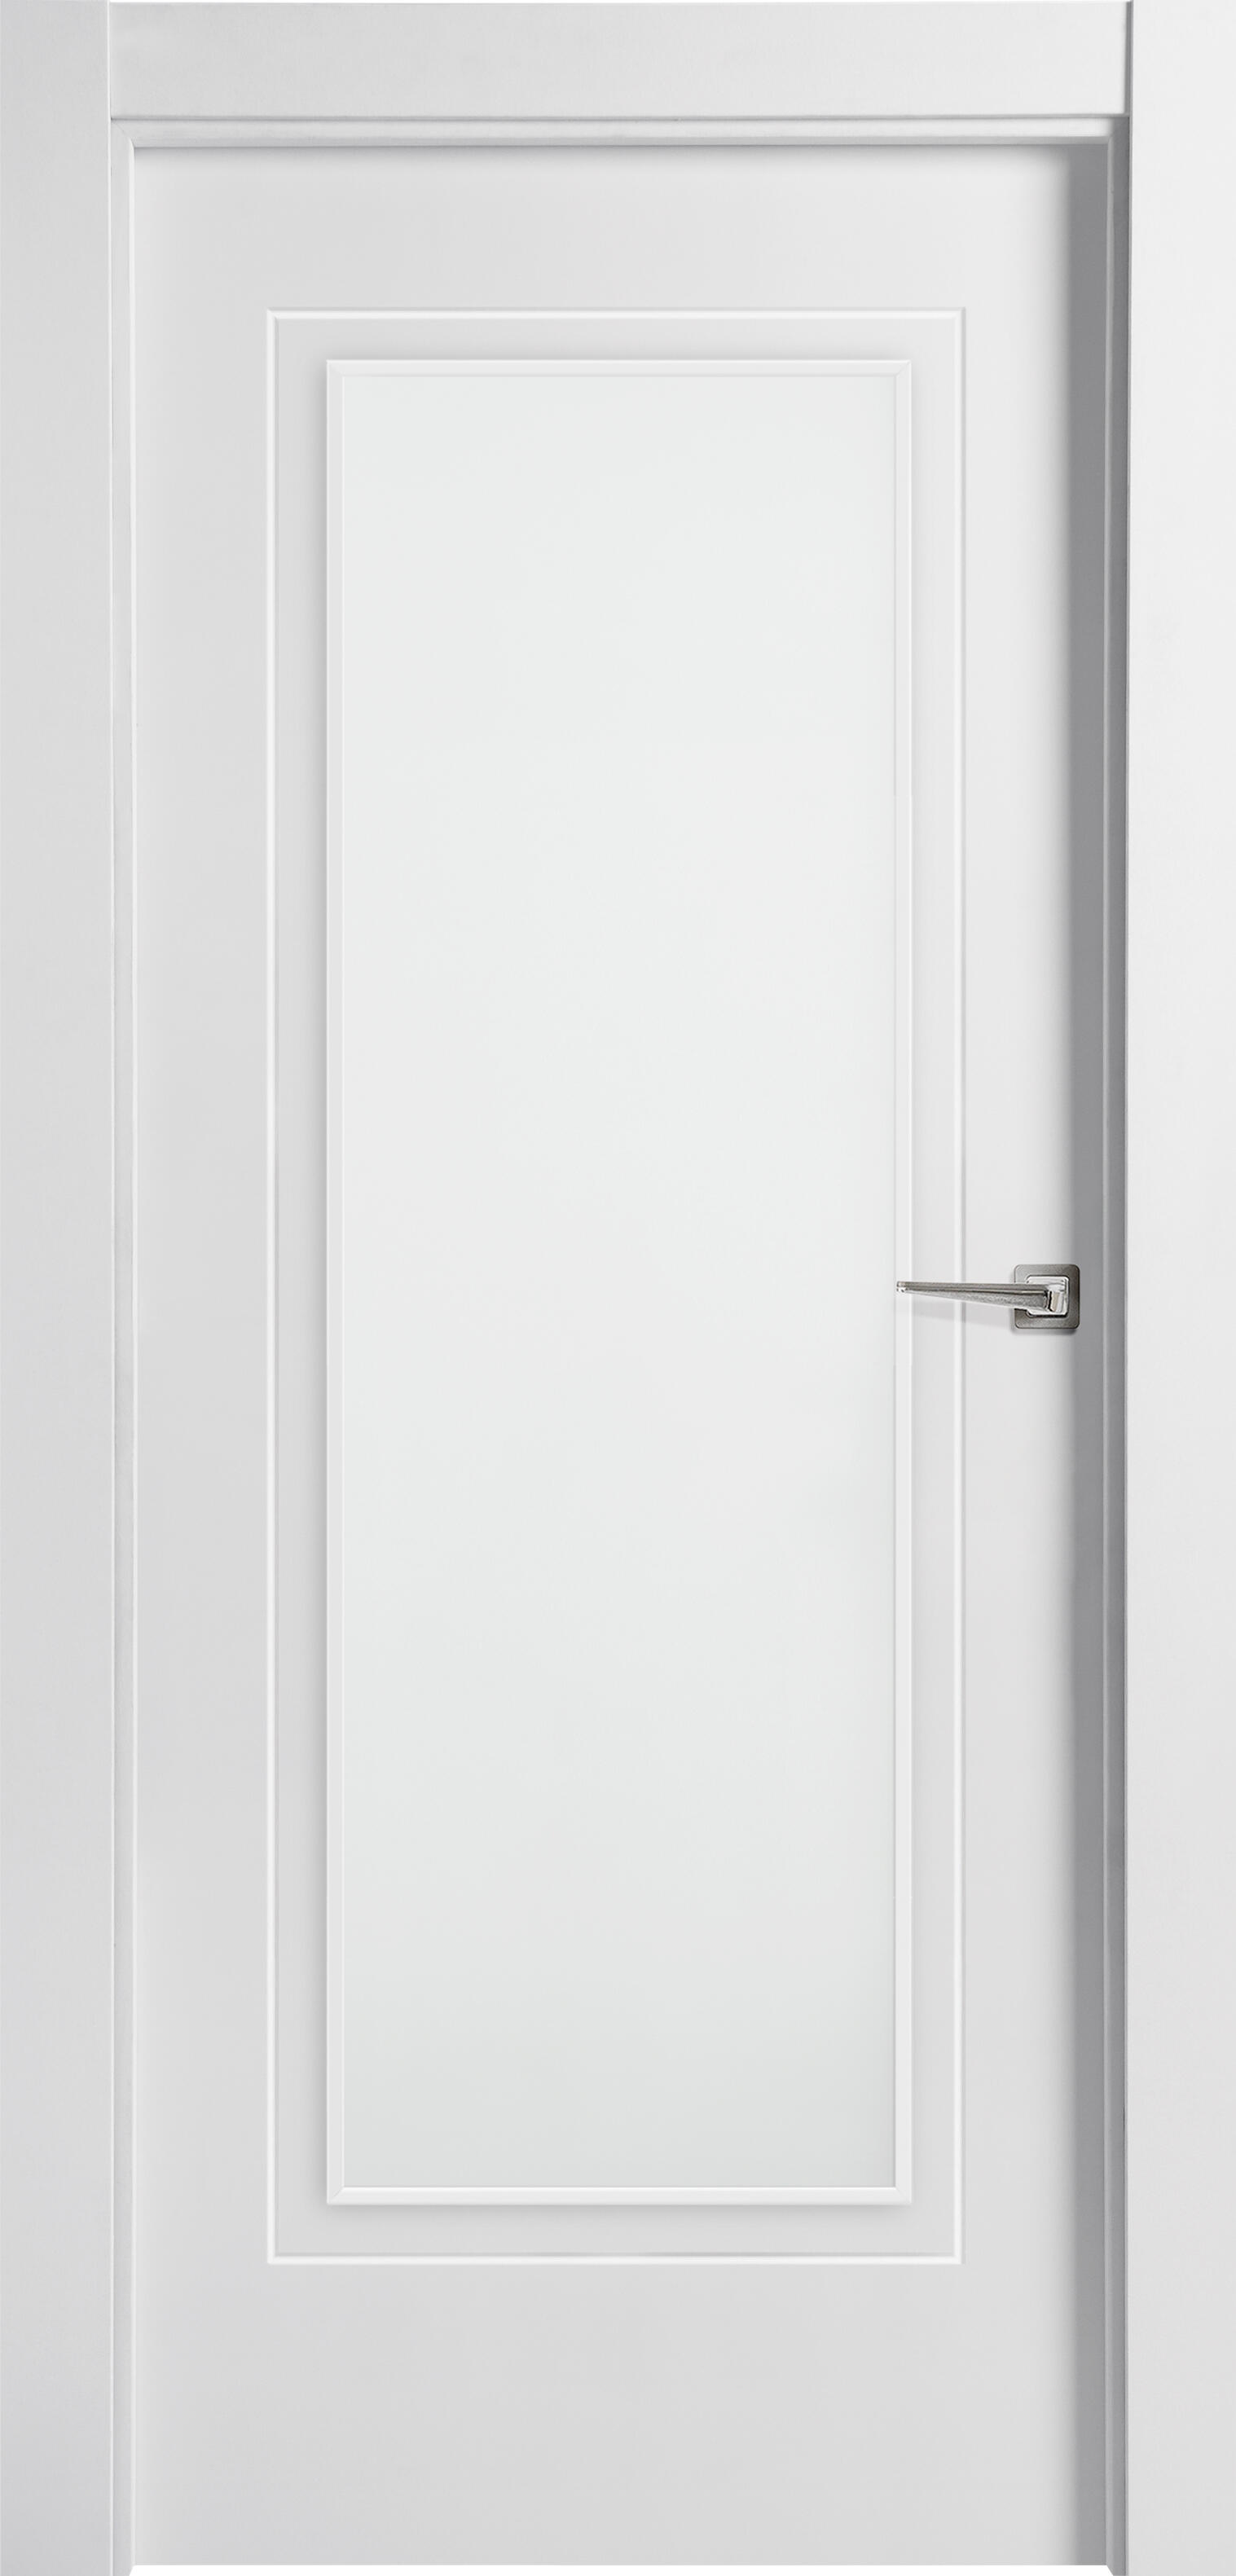 Puerta miramar blanco de apertura izquierda con cristal 9x92.5 cm